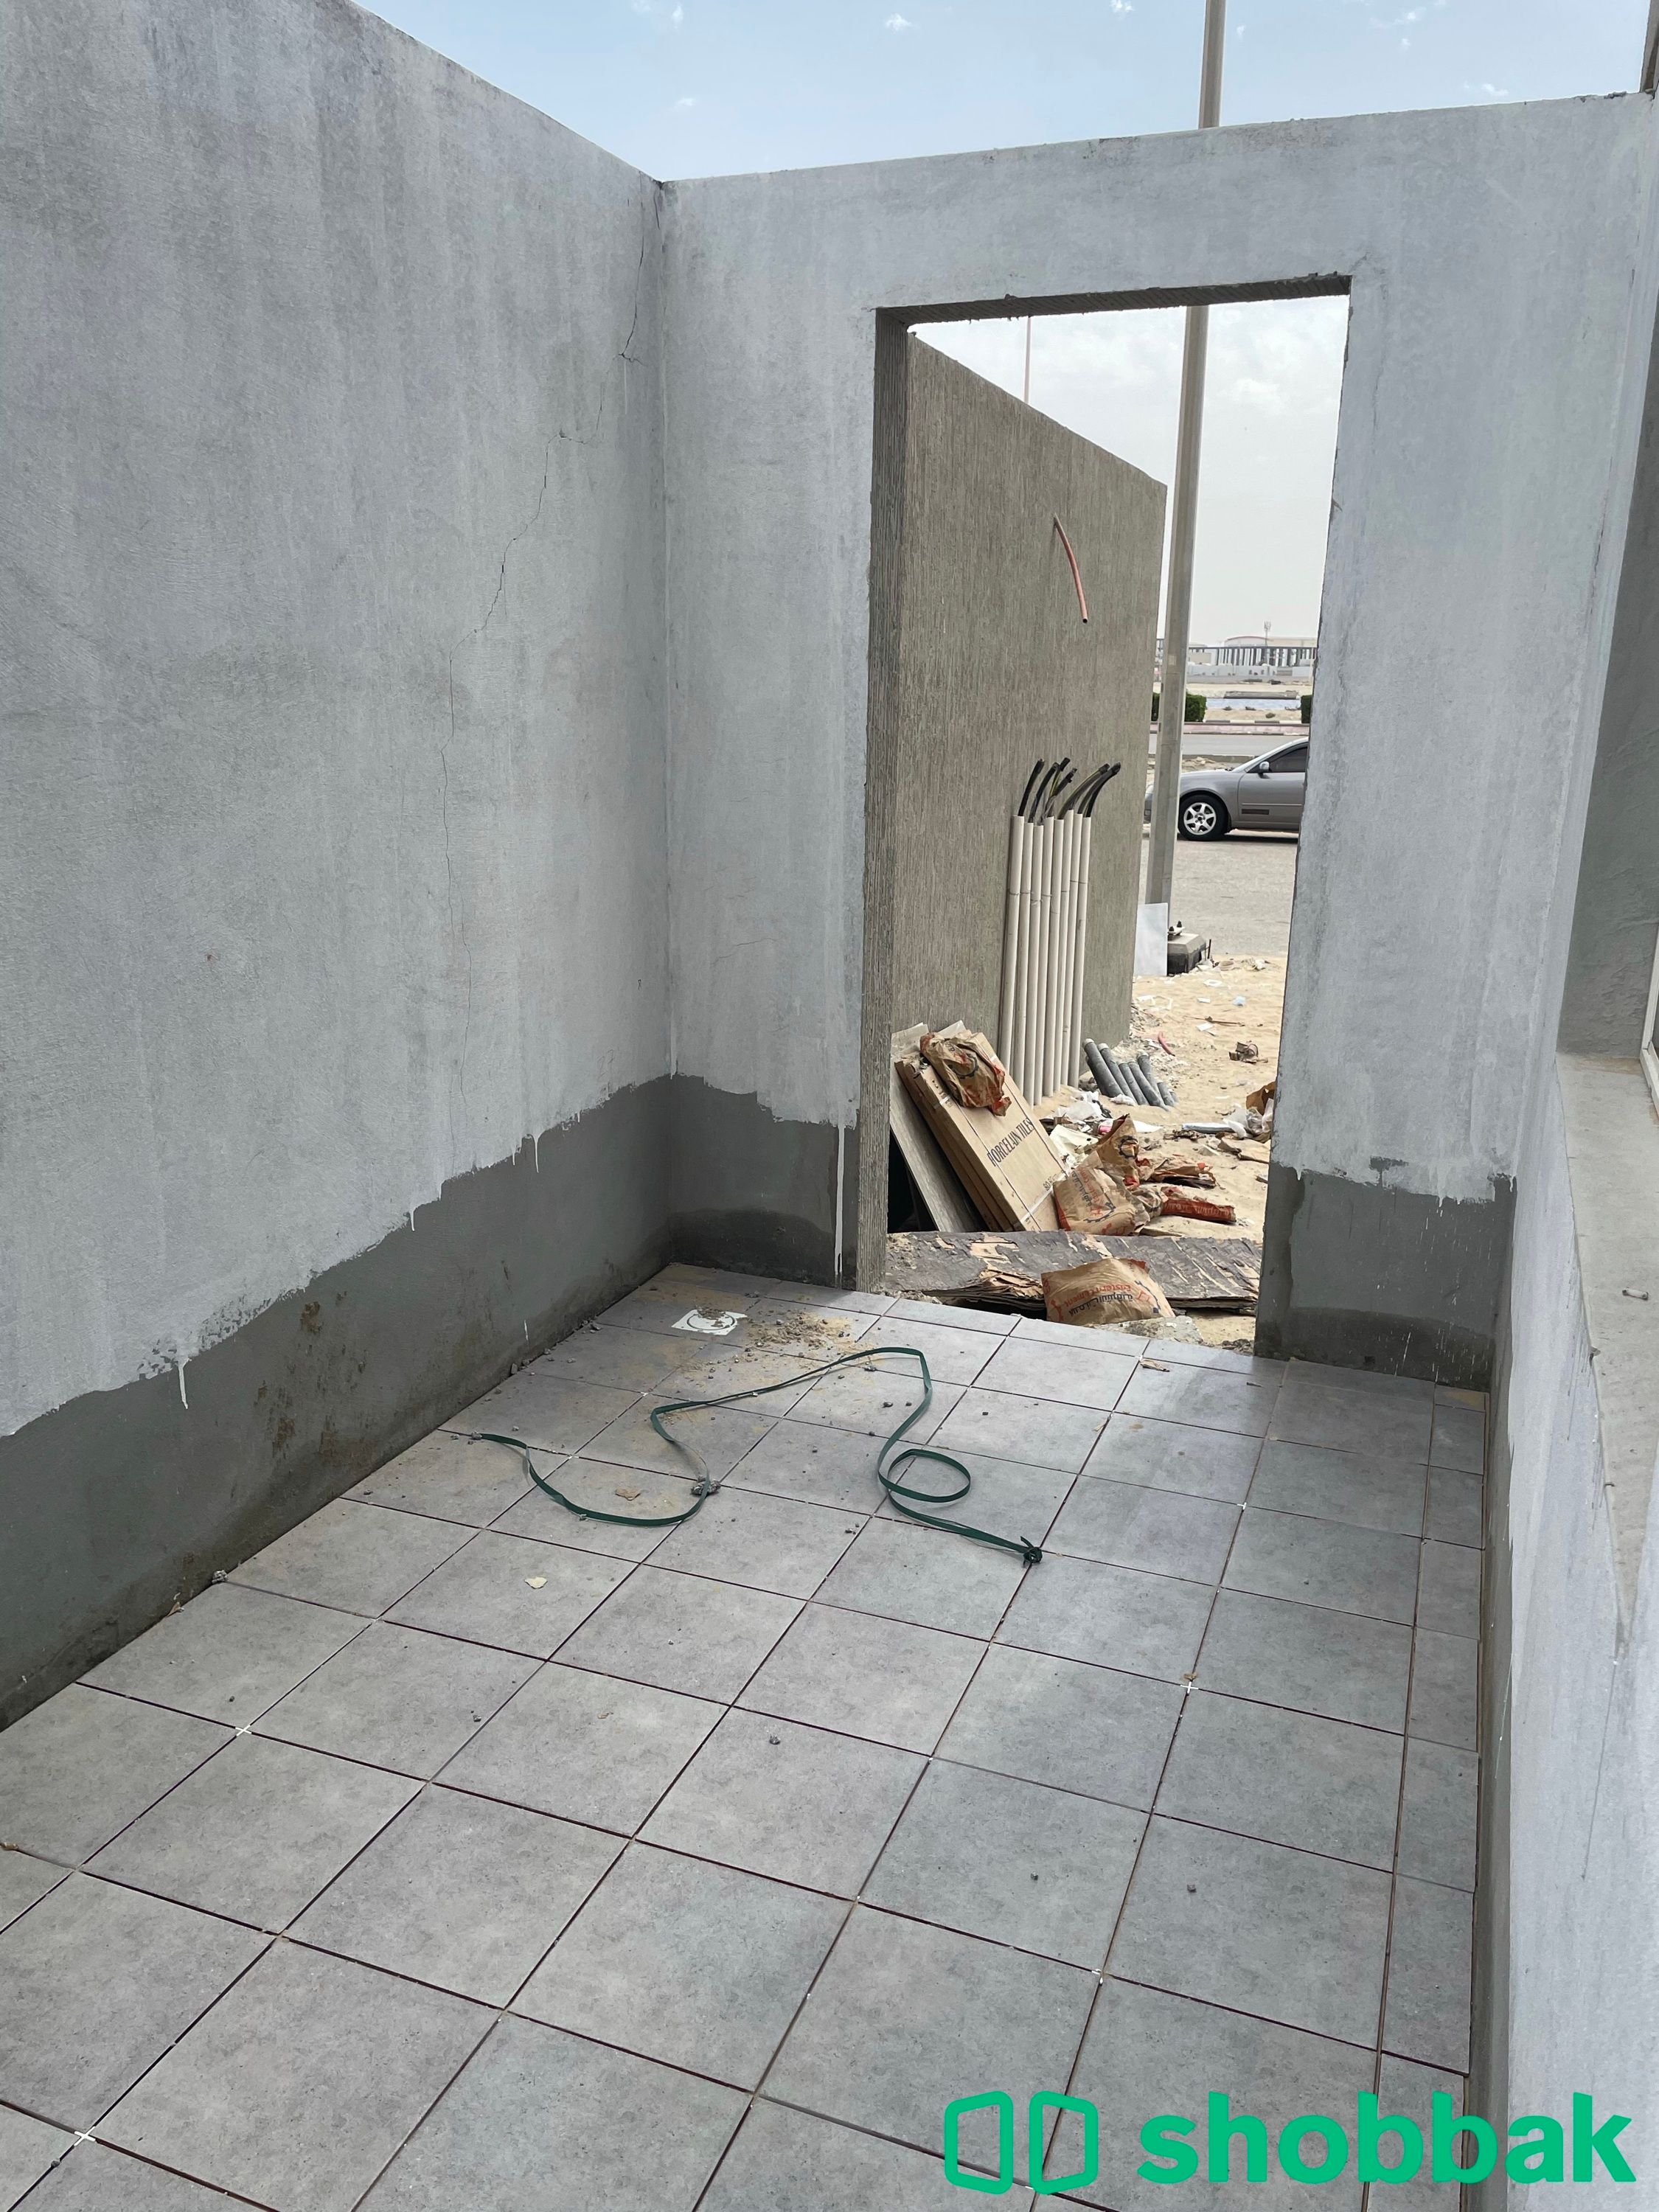 عمارة رقم (1) شقة رقم (1) للبيع بحي الجوهرة-الدمام. شباك السعودية